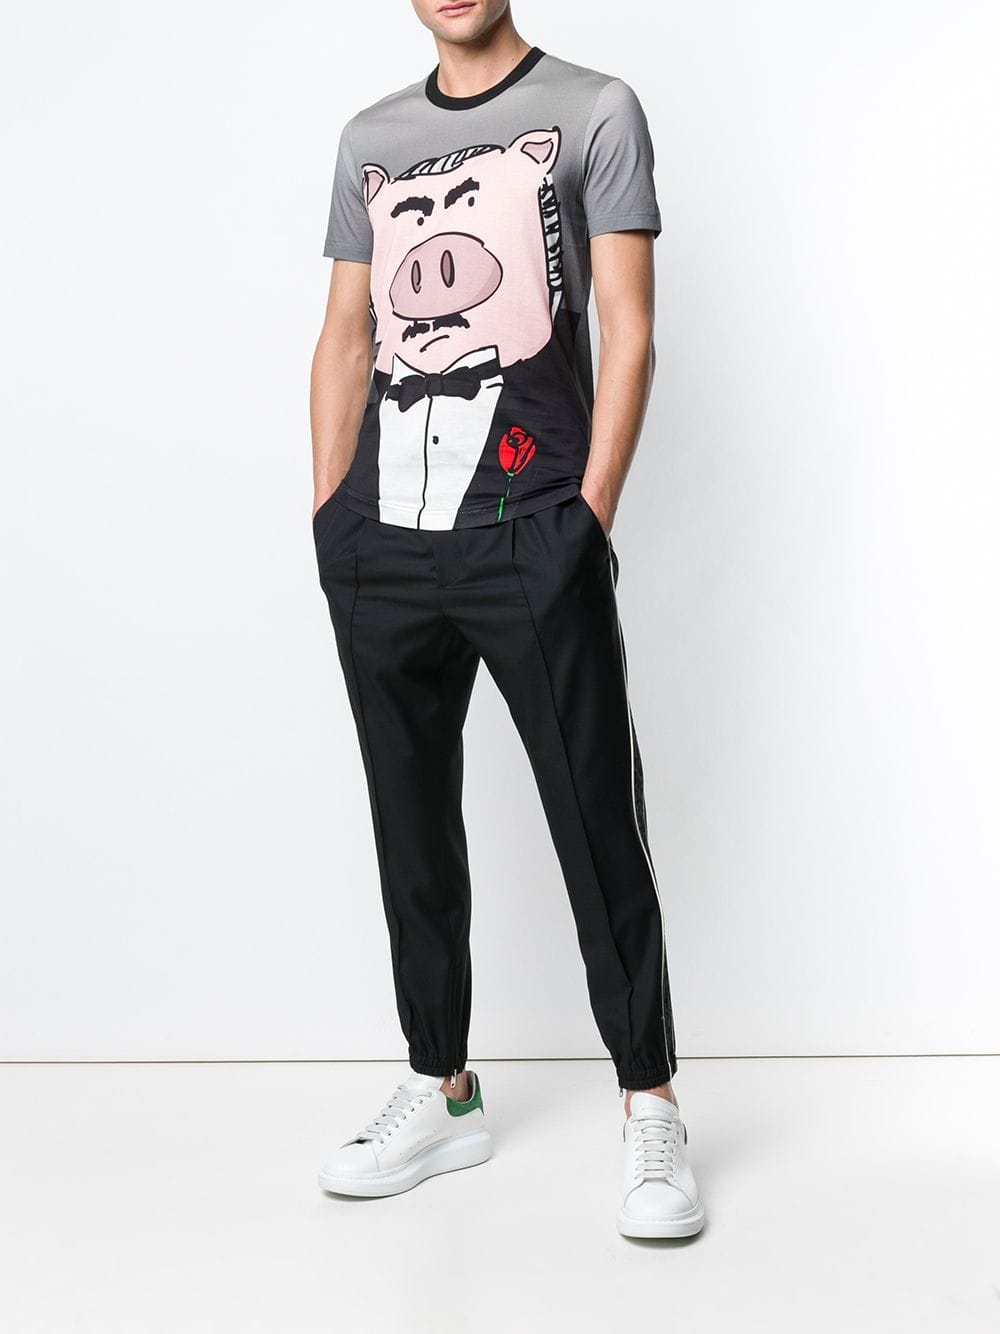 Ao phong Dolce & Gabbana Sicily Pig T-shirt2